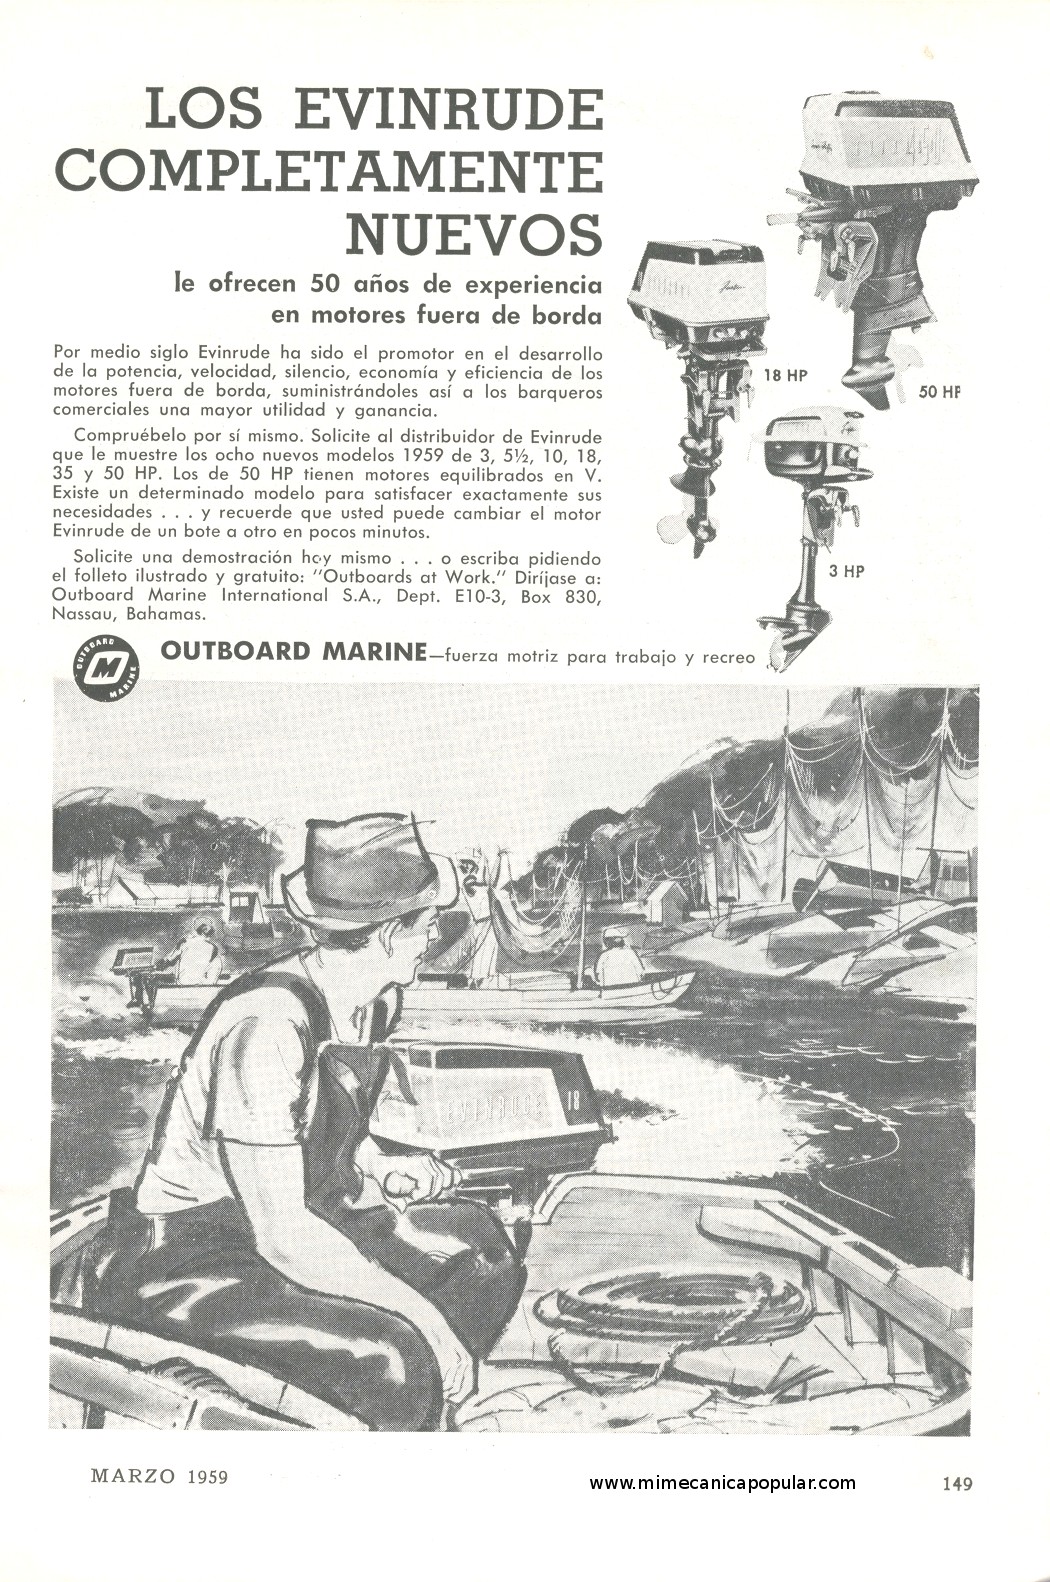 Publicidad - Motores Fuera de Borda Evinrude - Marzo 1959